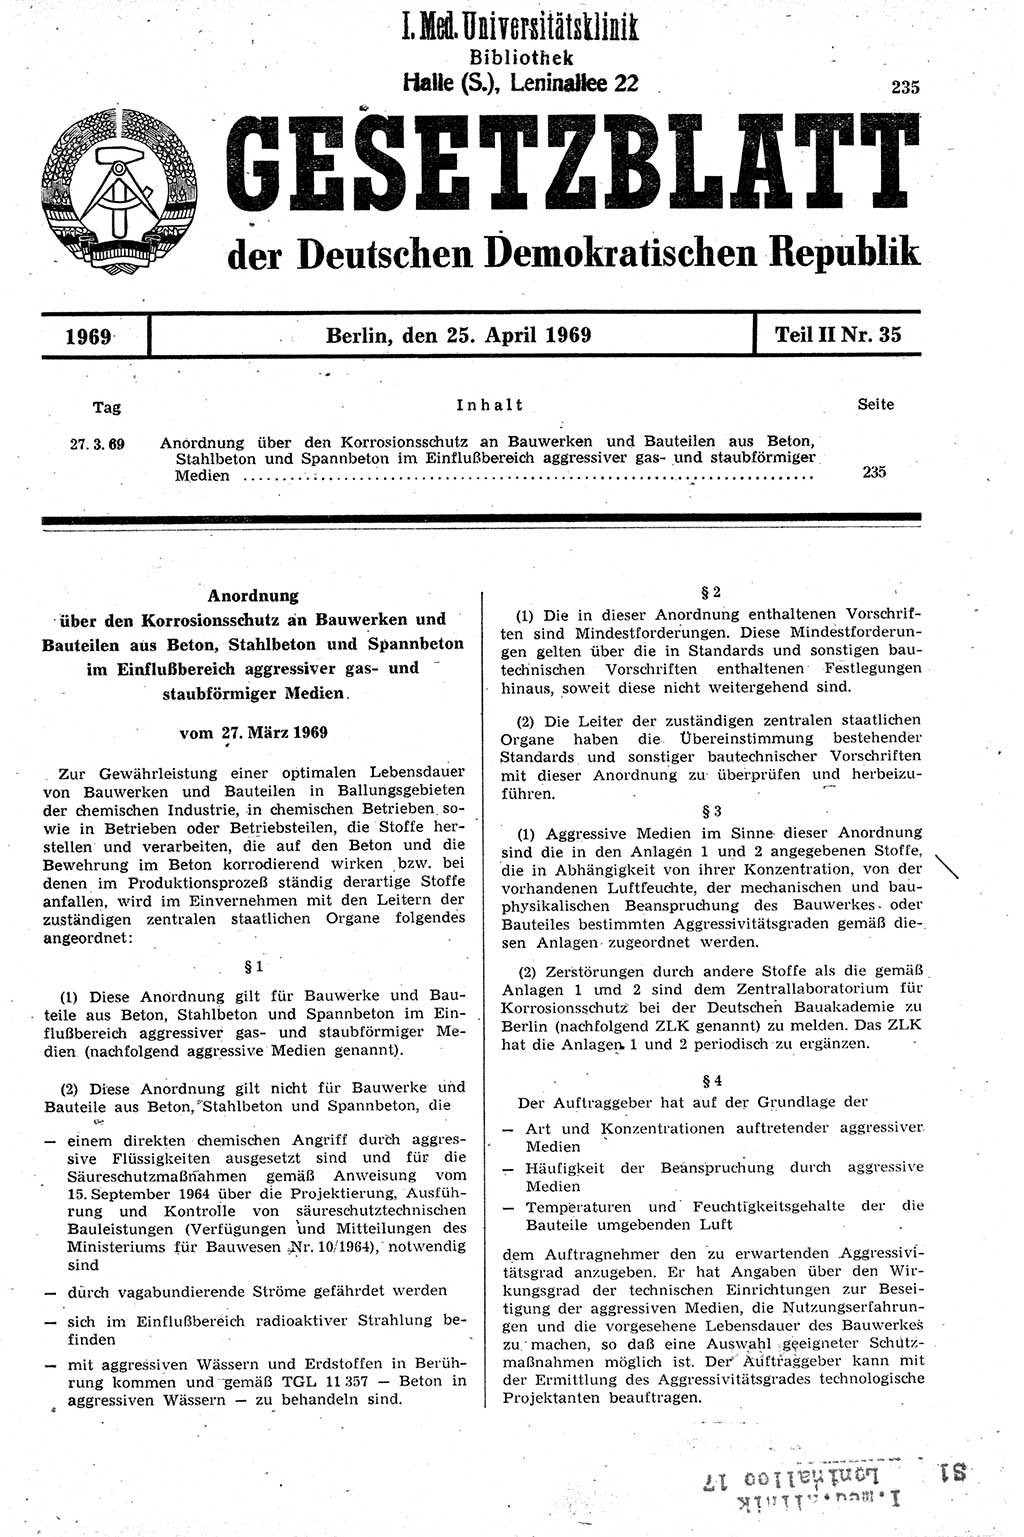 Gesetzblatt (GBl.) der Deutschen Demokratischen Republik (DDR) Teil ⅠⅠ 1969, Seite 235 (GBl. DDR ⅠⅠ 1969, S. 235)